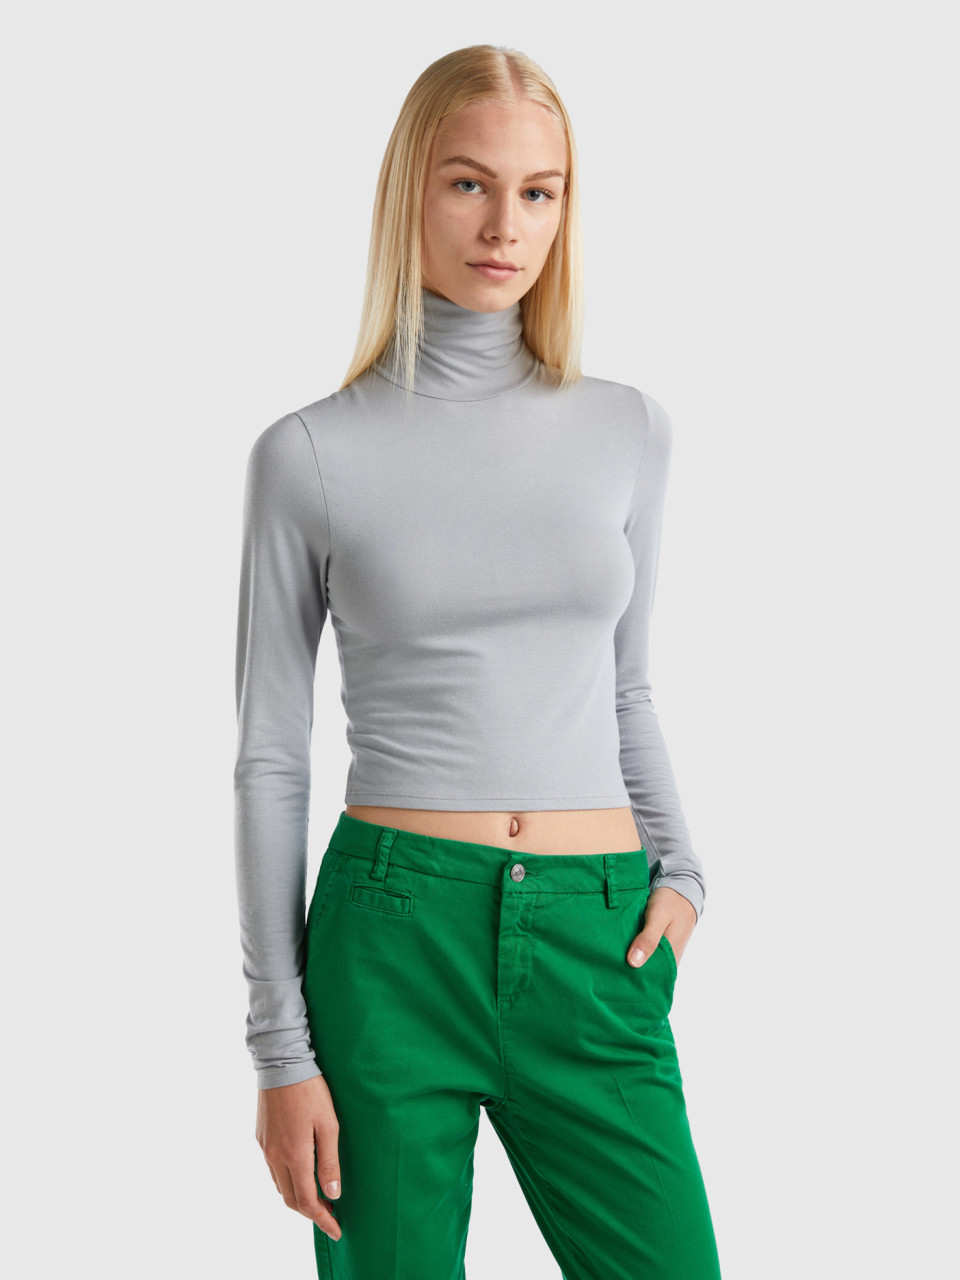 Benetton, T-shirt With High Neck, Light Gray, Women